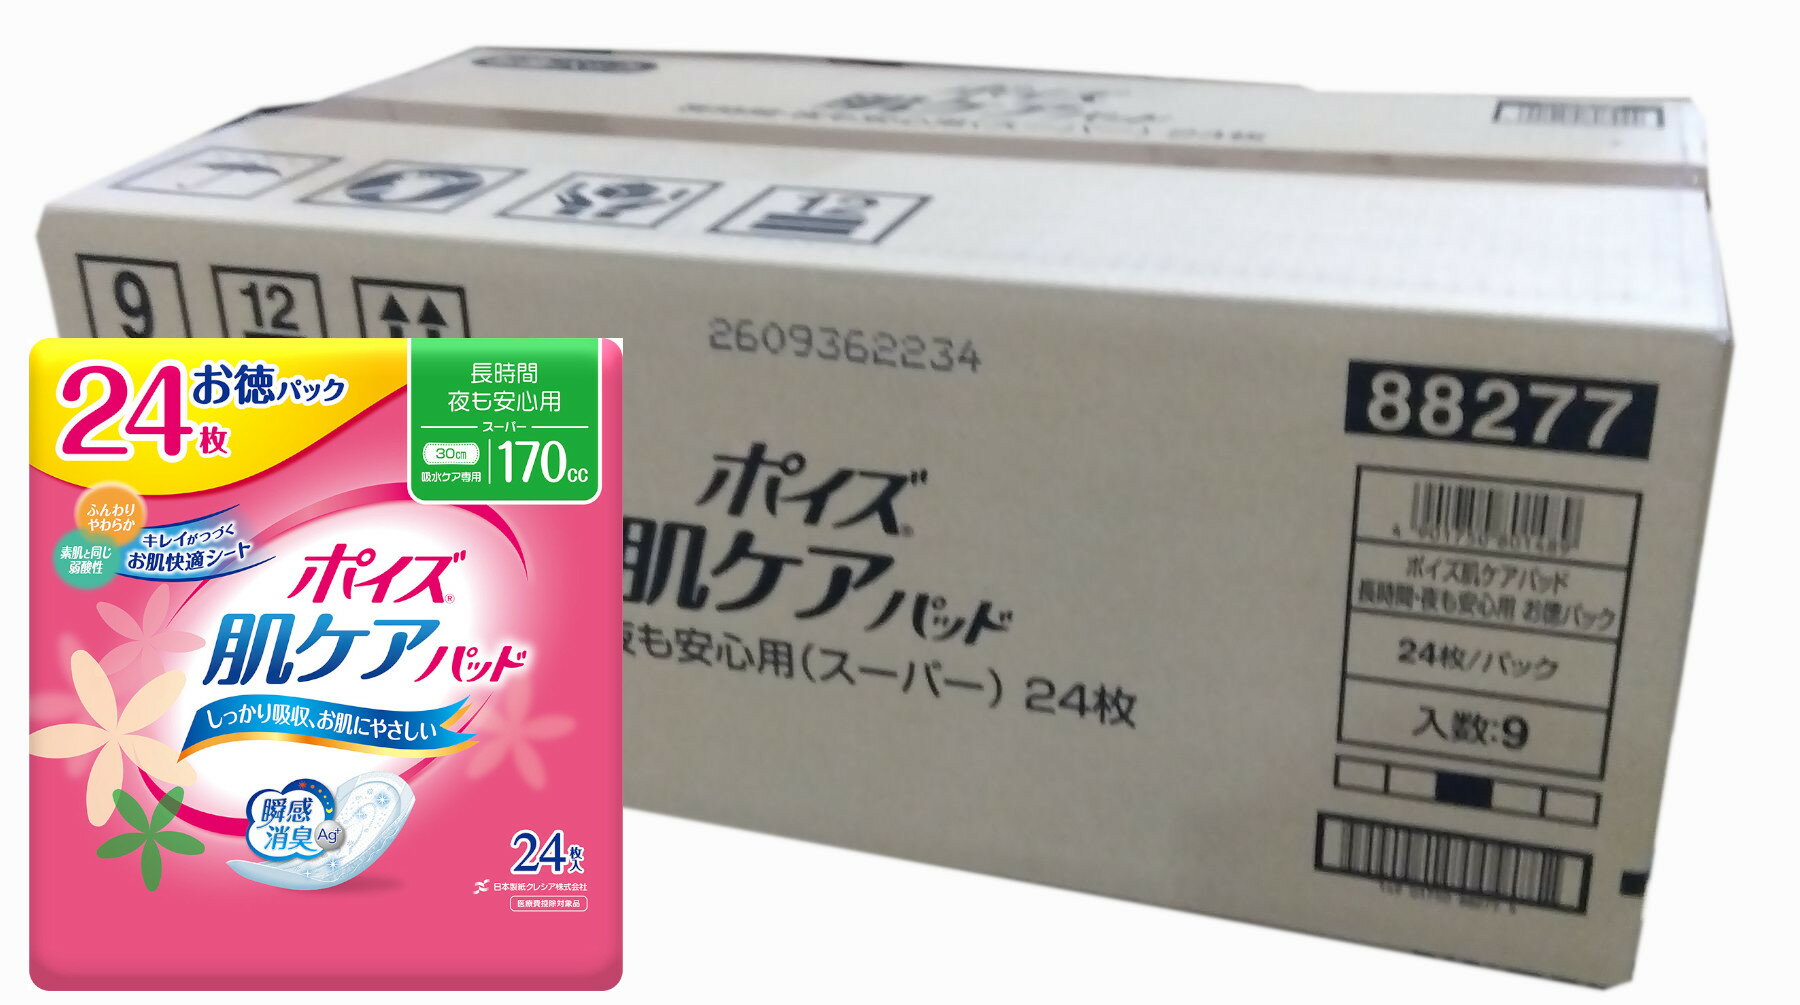 【9個で送料込】日本製紙クレシア ポイズパッド 超吸収ワイド 男性用 12枚入 ( 尿とりパッド ) ×9点セット ( 4901750801496 )